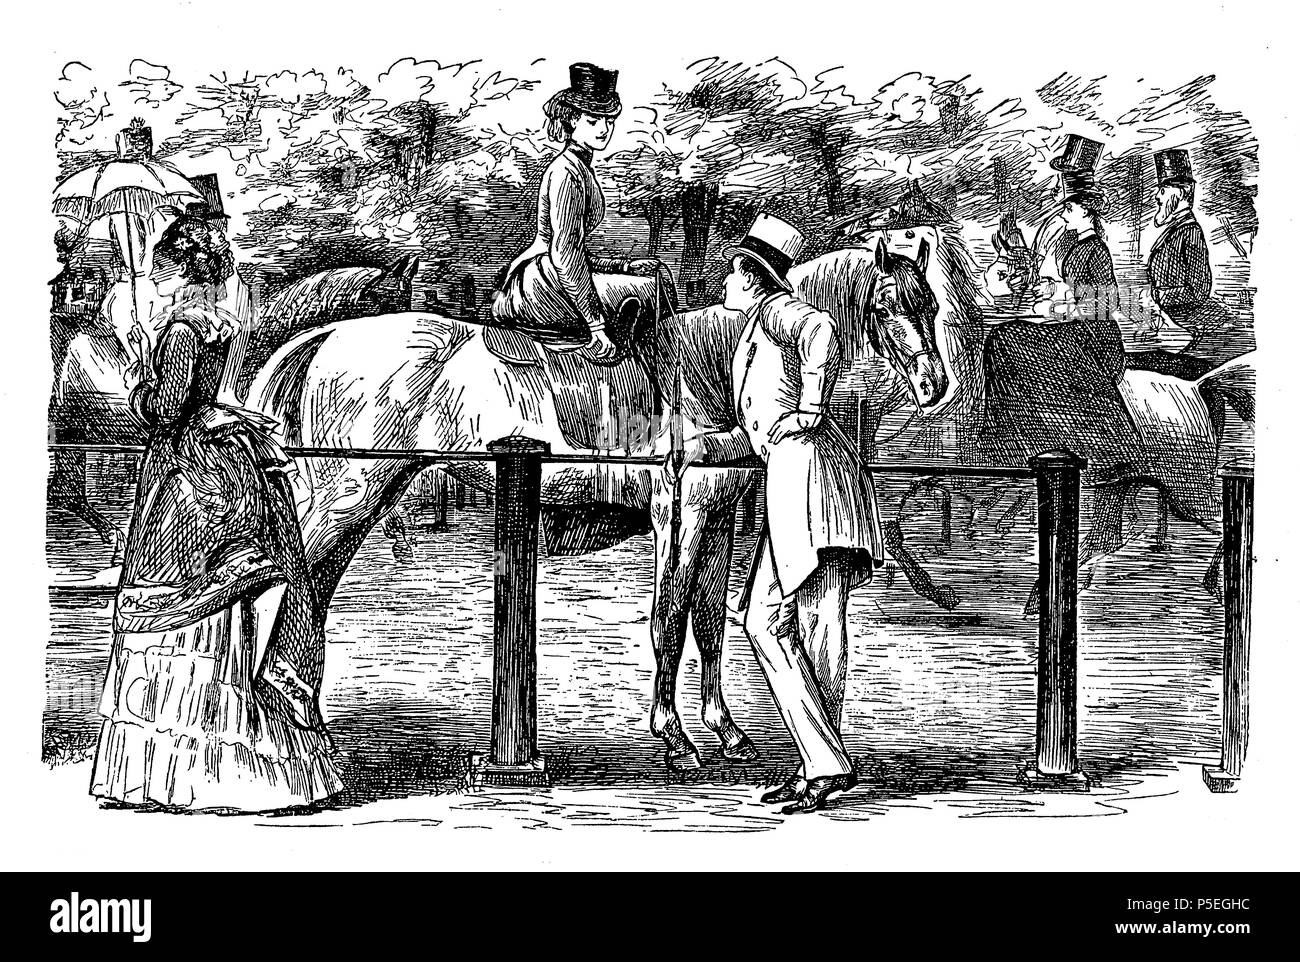 La datation à la course, caricature montrant un homme en train de flirter avec une jeune femme cheval par George du Maurier (1834-1896), un caricaturiste franco-britannique pour Punch, 1873 Banque D'Images